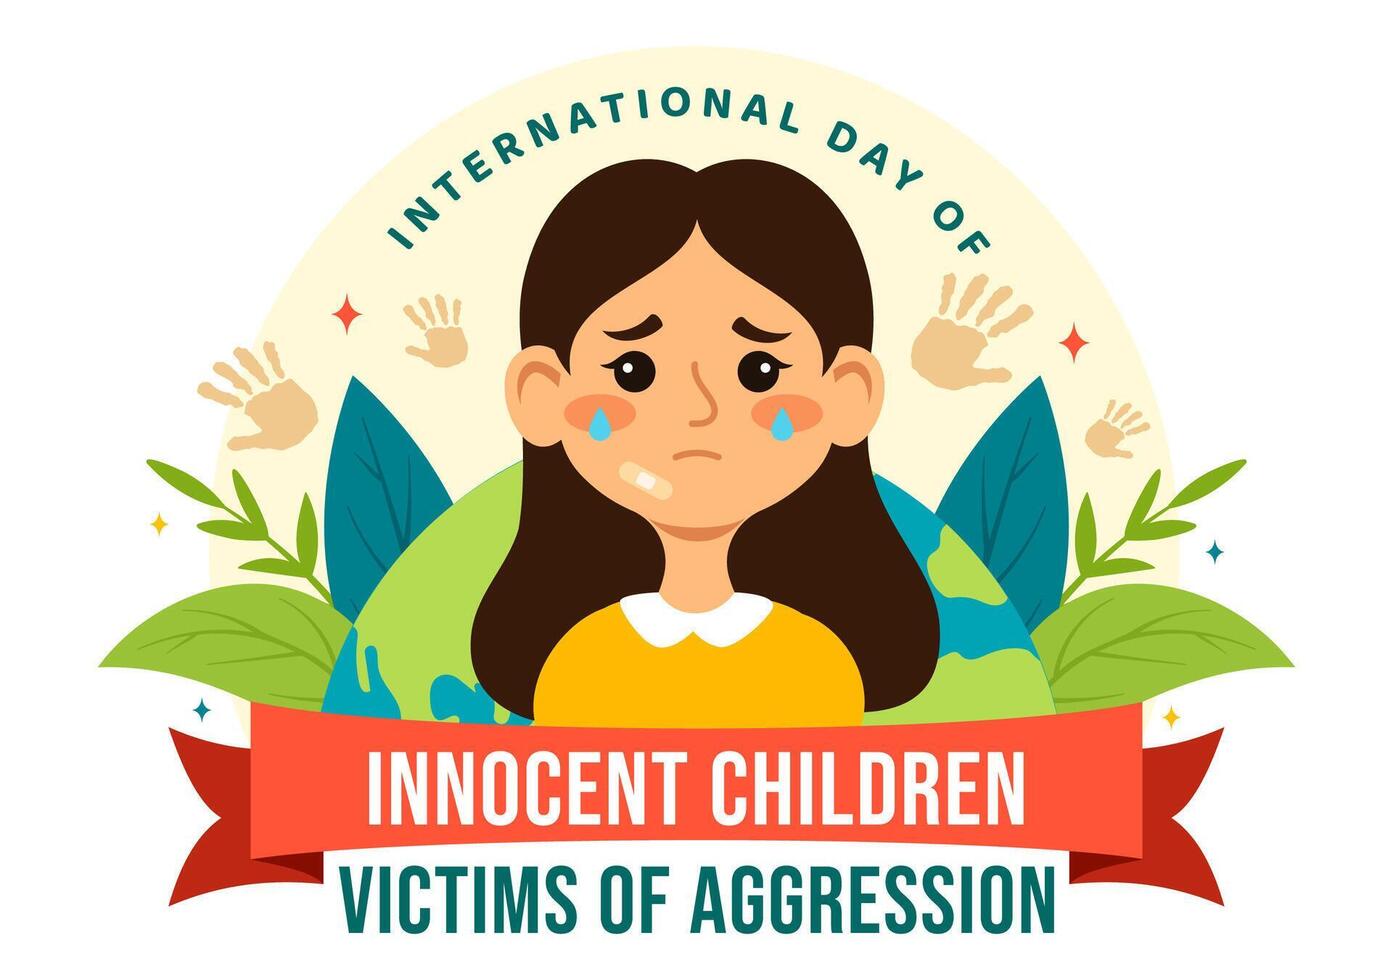 International Tag von unschuldig Kinder die Opfer von Aggression Vektor Illustration auf 4 Juni mit Kinder traurig nachdenklich und weint im eben Karikatur Hintergrund